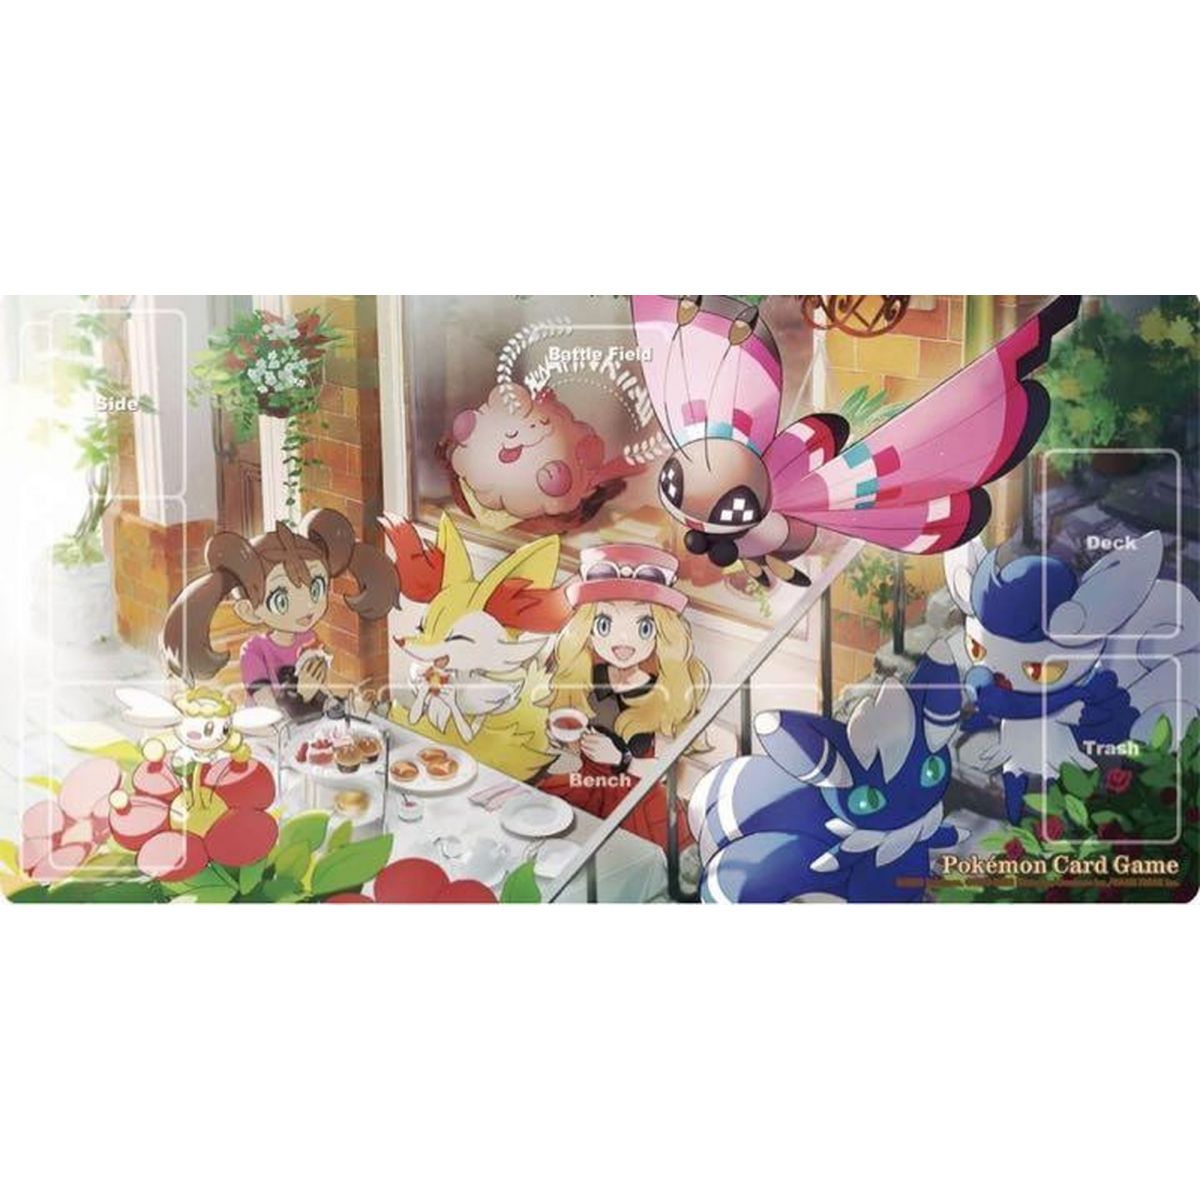 Carte Pokémon Ptcg Version Japonaise Officielle, S11A, Chr, Longue Queue,  Firefox, Serena, Anime, VerlaunGame, Collection, Jouet, Cadeau